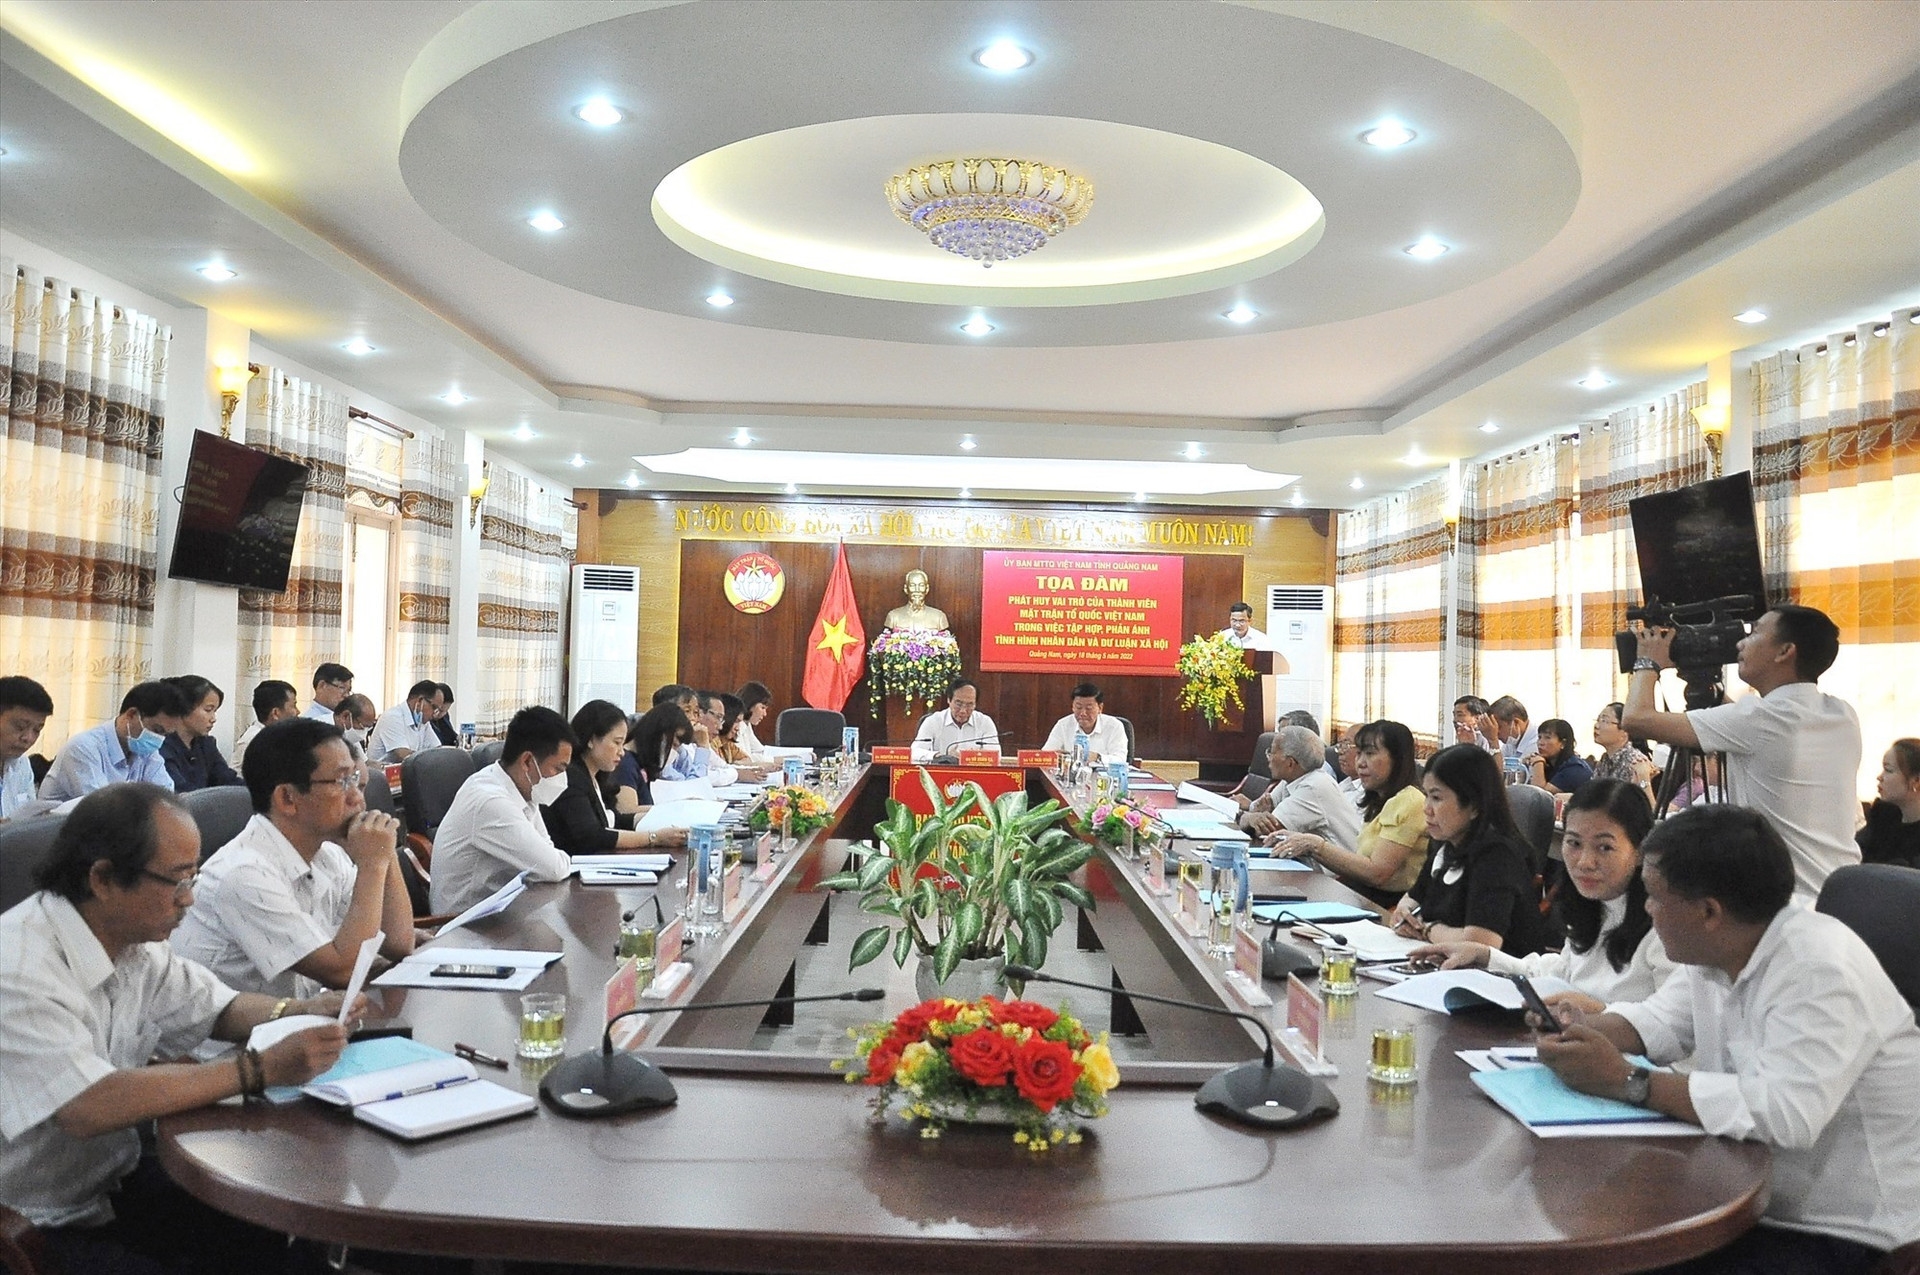 Tọa đàm “Phát huy vai trò của thành viên MTTQ Việt Nam trong việc học tập, phản ánh tình hình nhân dân và dư luận xã hội” do Ủy ban MTTQ Việt Nam tỉnh Quảng Nam tổ chức diễn ra ngày 18/5/2022.